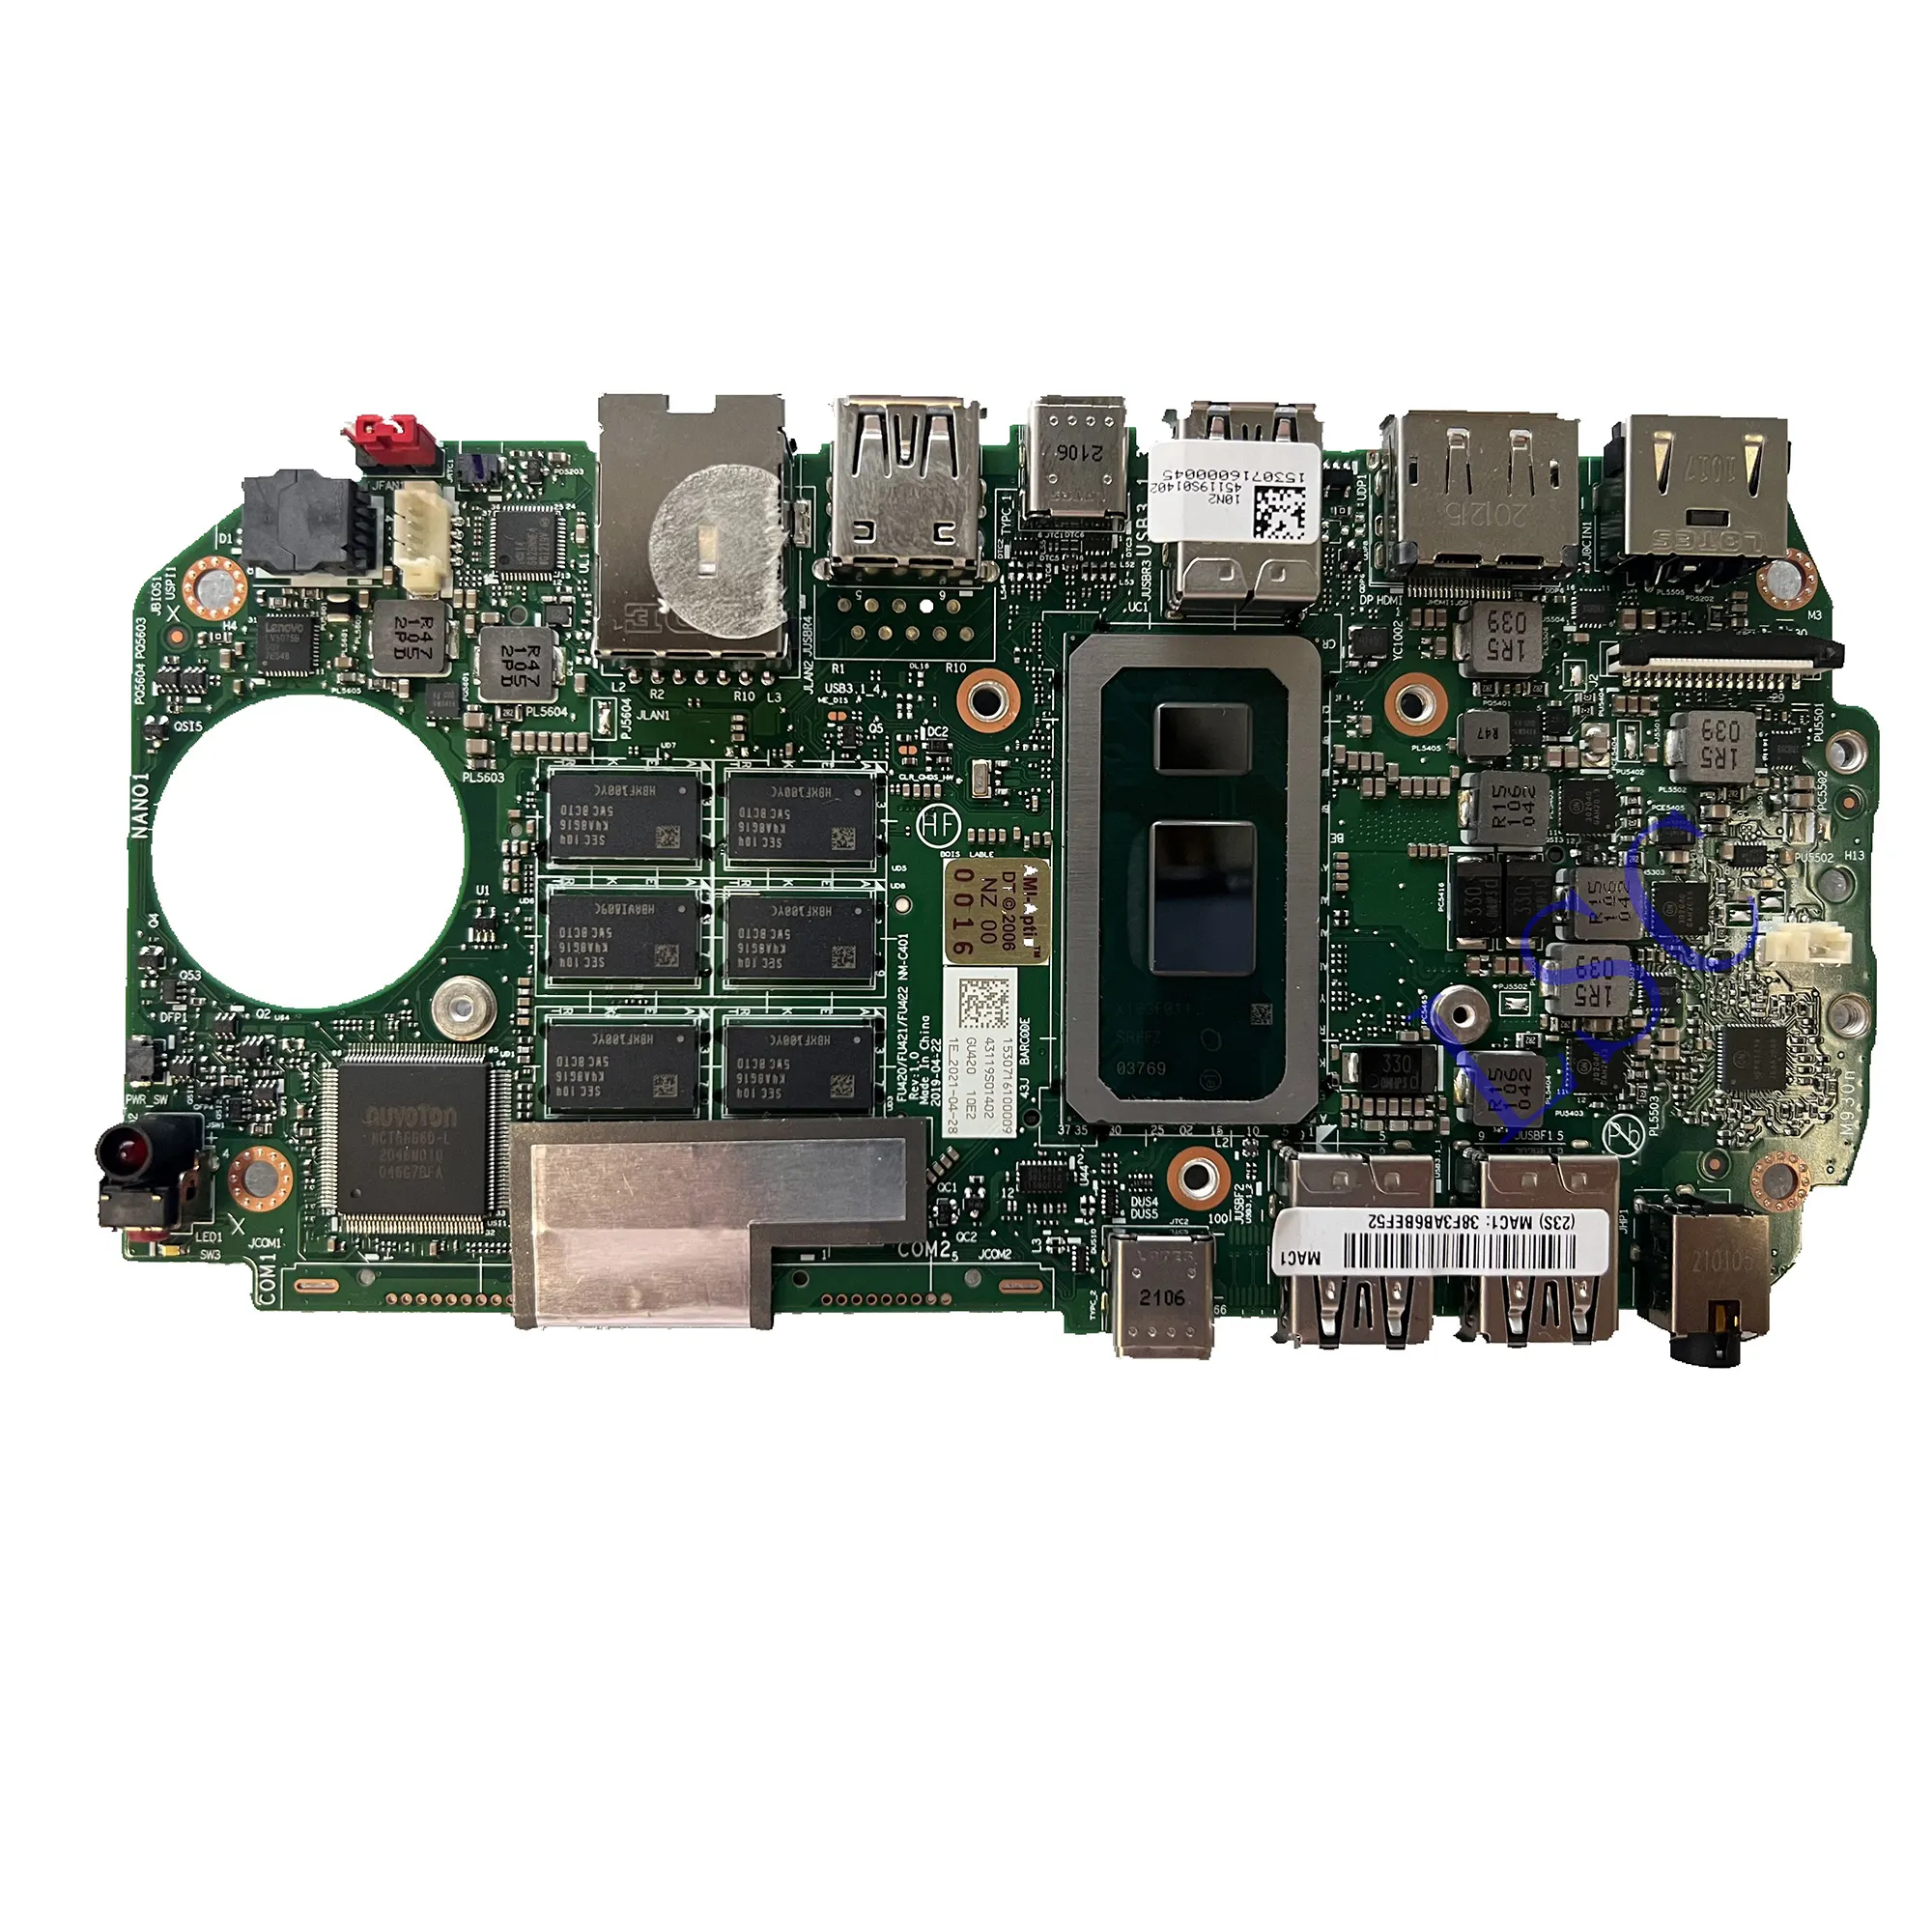 NM-C401 เมนบอร์ดสําหรับ ThinkCentre M90n-1 เมนบอร์ดเดสก์ท็อป CPU:4205U RAM:4G FRU:5B20U53774 RDD4 100% ทดสอบ OK